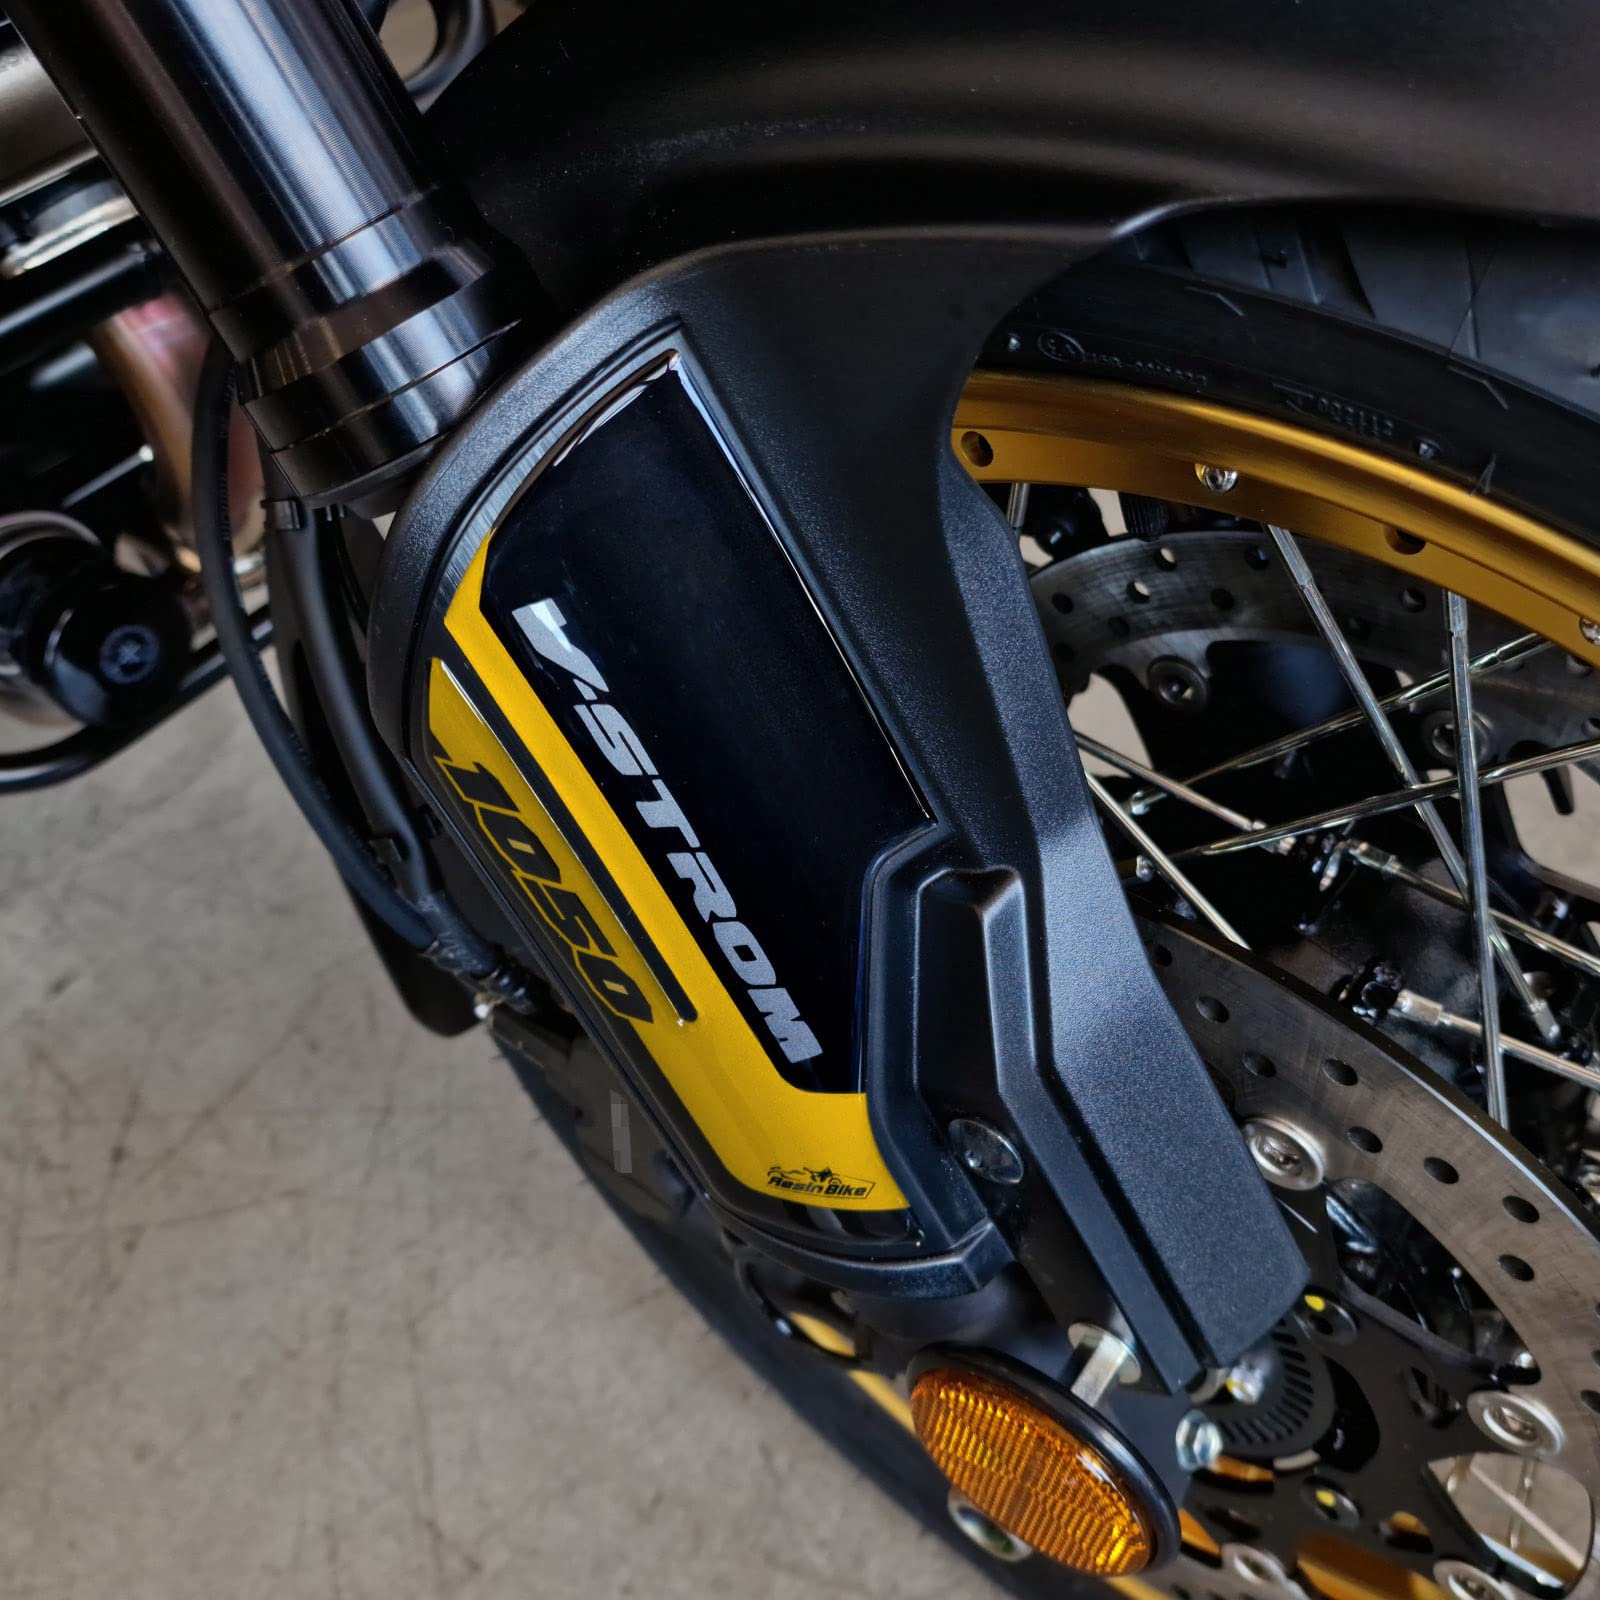 Resin Bike Aufkleber für Motorrad Kompatibel mit Suzuki V-Strom 1050 XT ABS 2022 Gold und Schwarz Dubai. Kotflügelschutz vor Stößen und Kratzern. Paar 3D-Harzklebstoff - Stickers - Made in Italy von Resin Bike